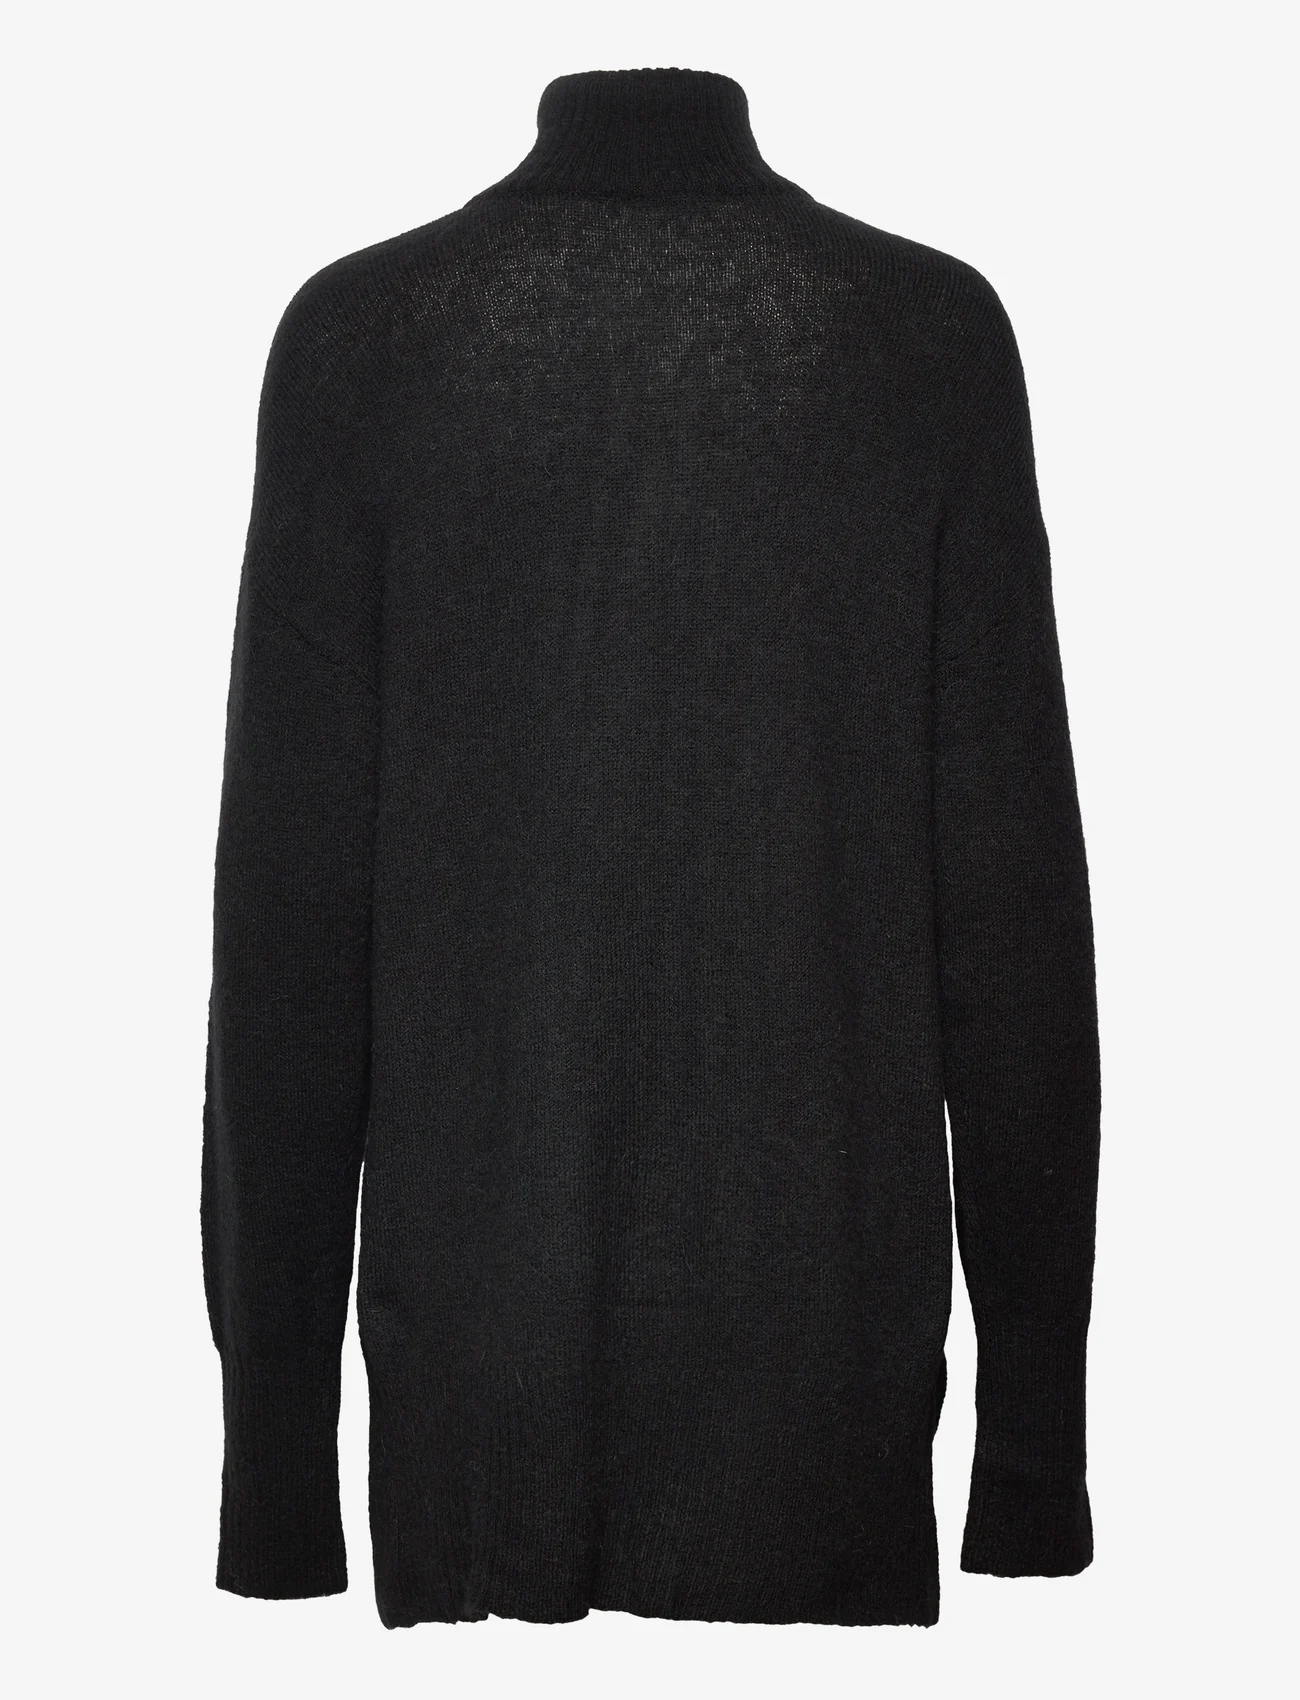 Culture - CUzidsel Zipper Pullover - polotröjor - black - 1